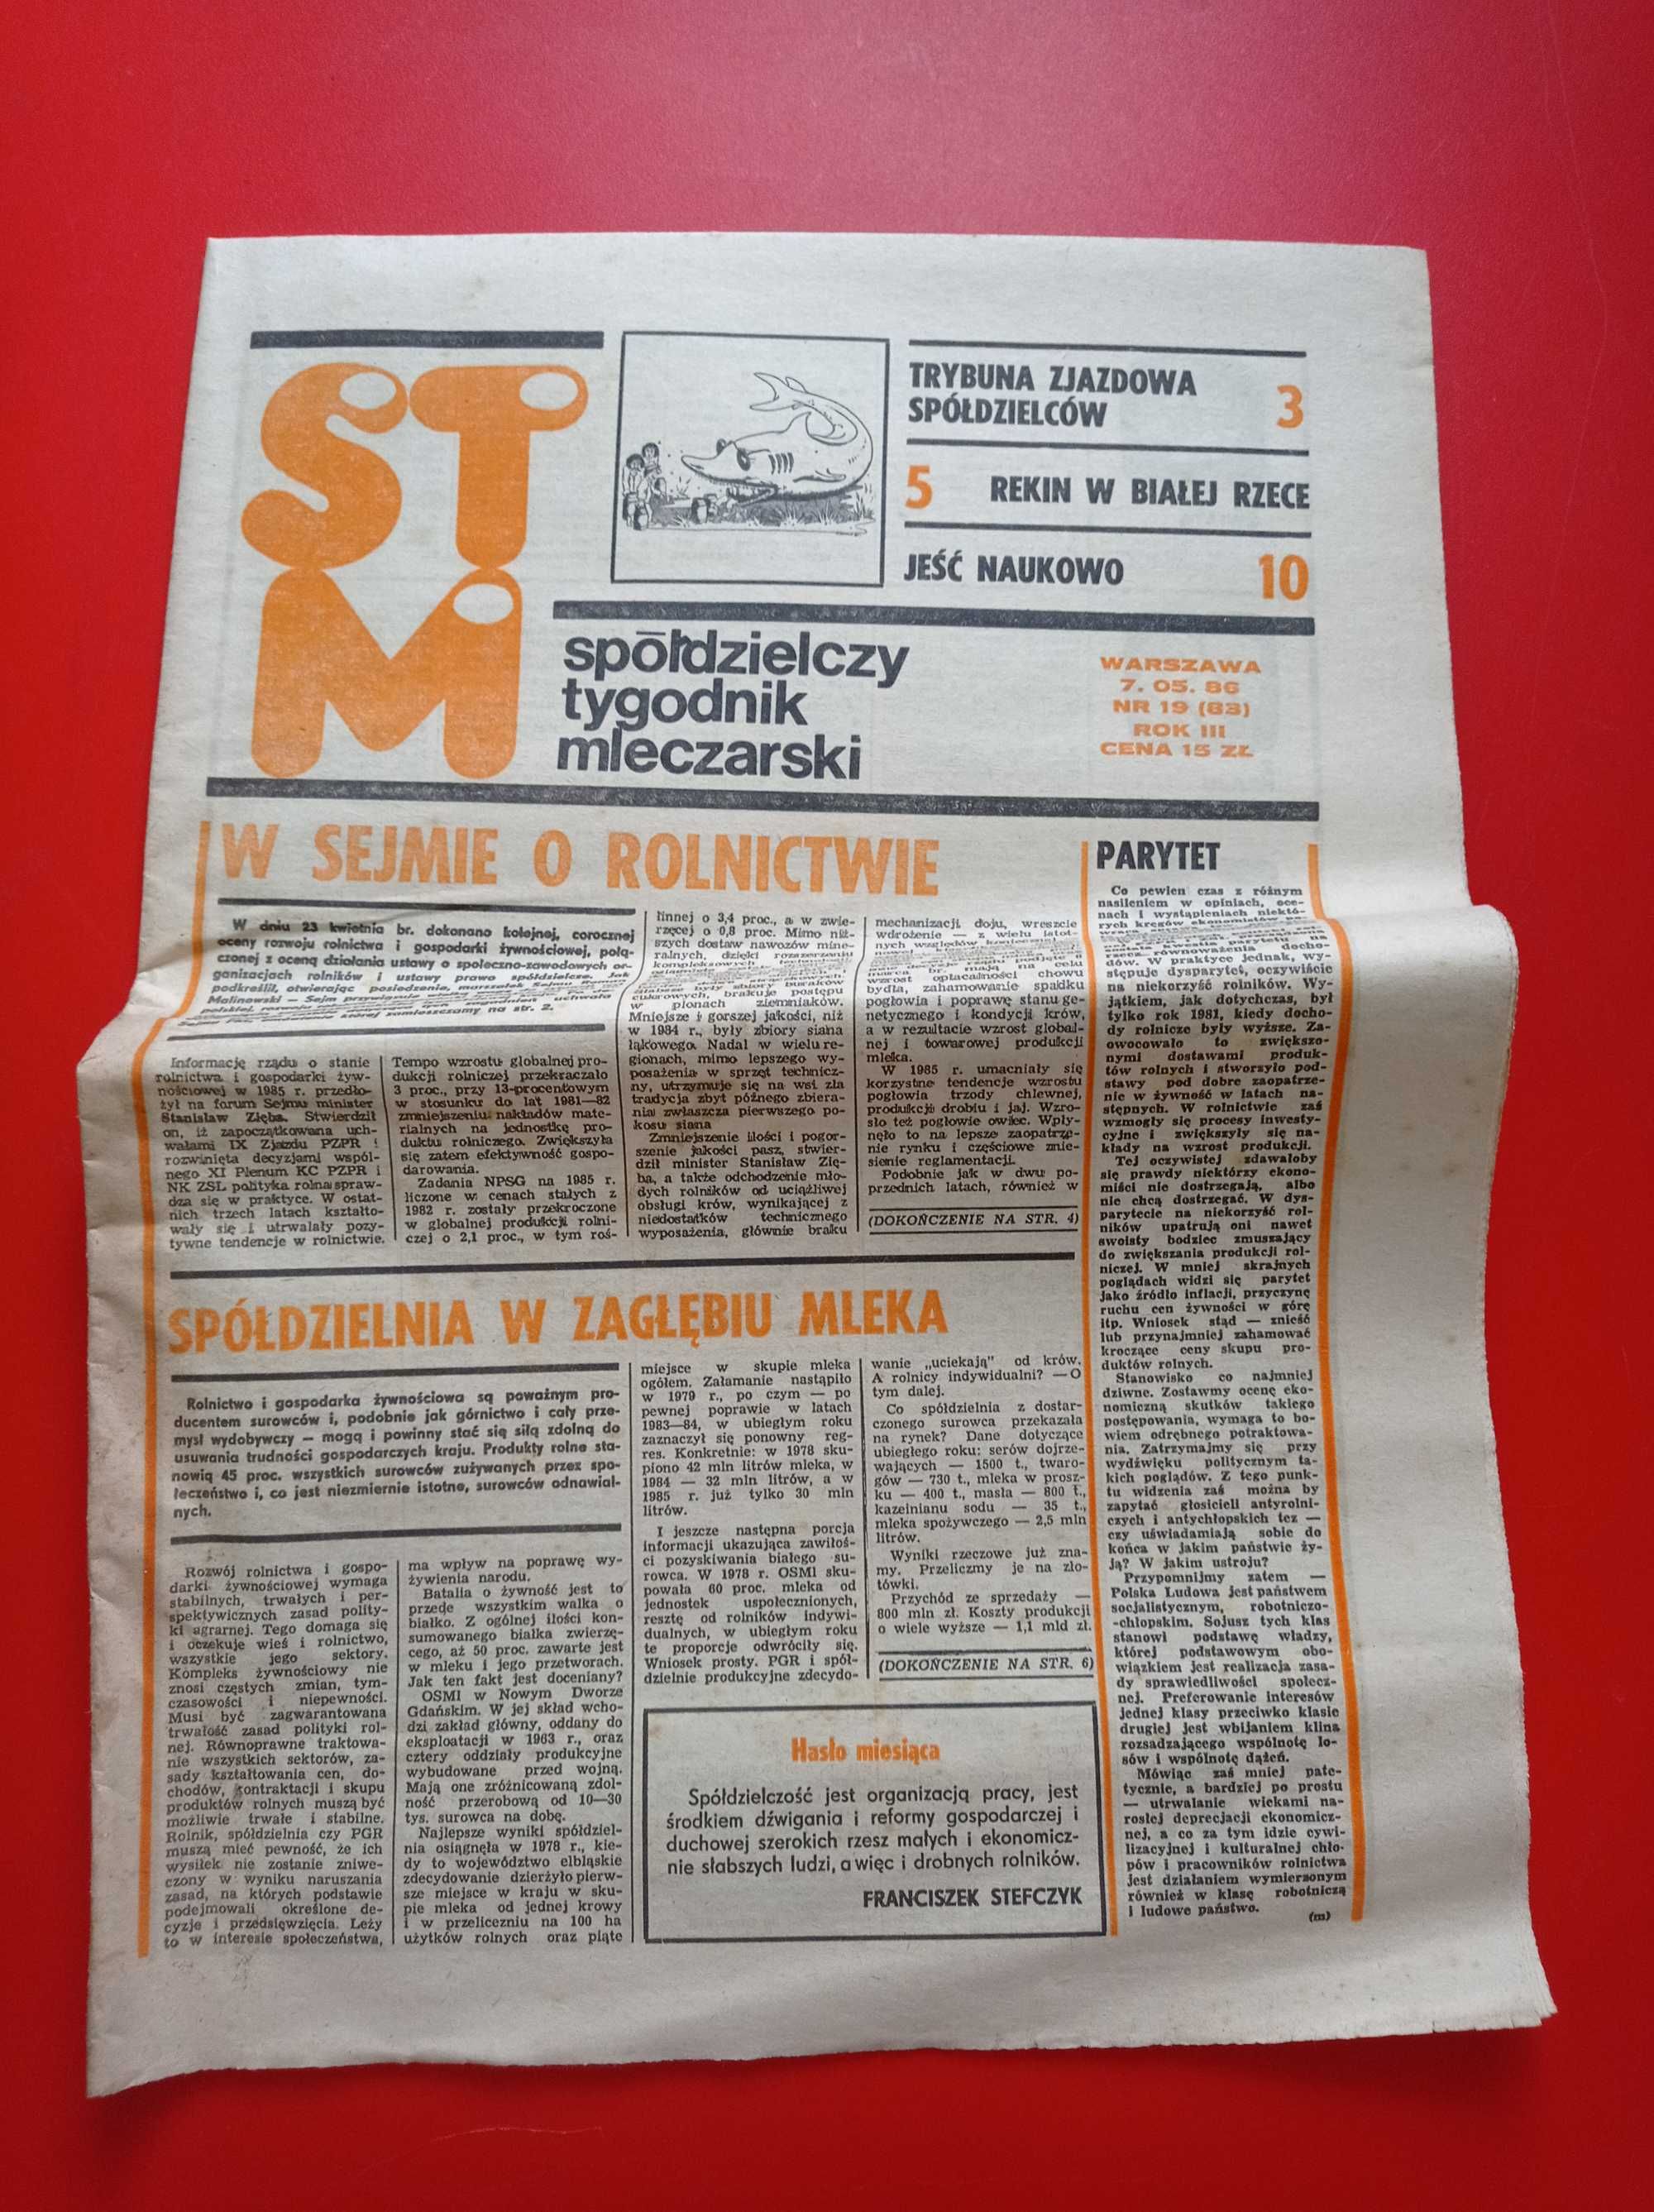 STM Spółdzielczy Tygodnik Mleczarski nr 19 / 1986